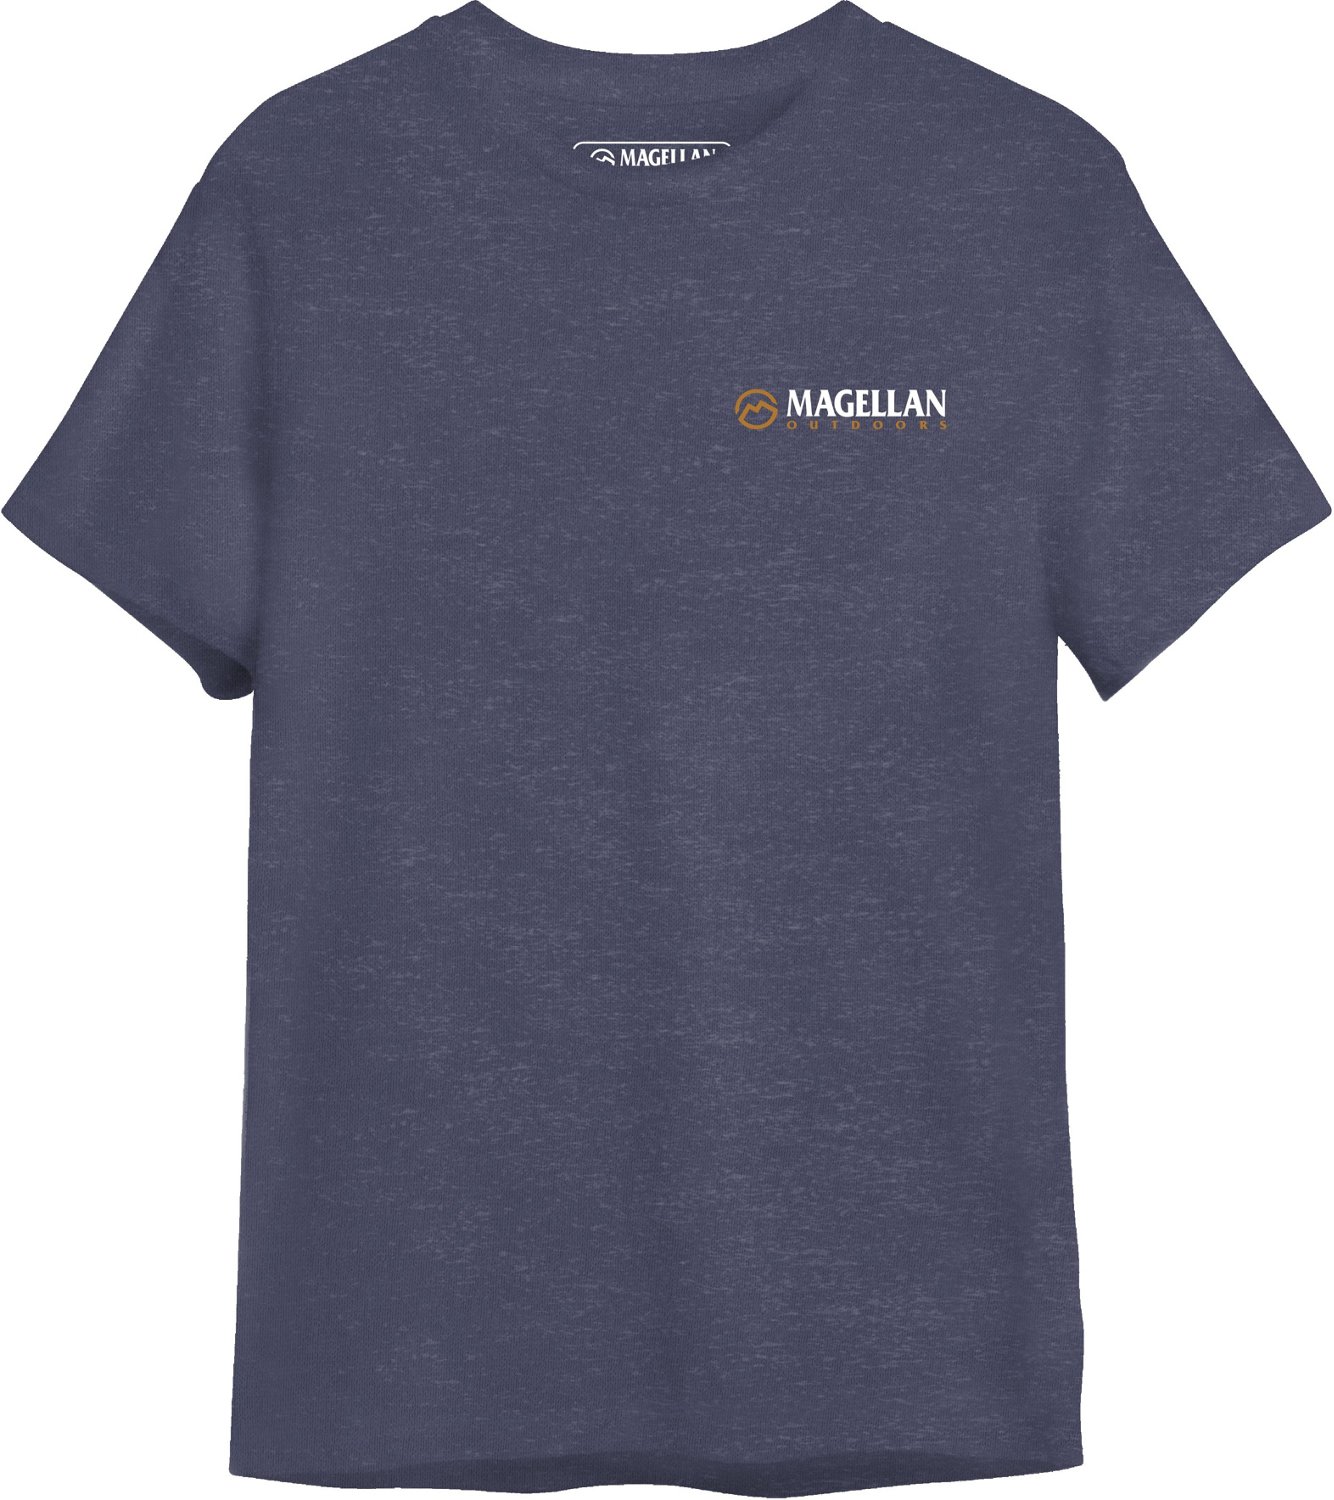 Magellan Shirts for Men